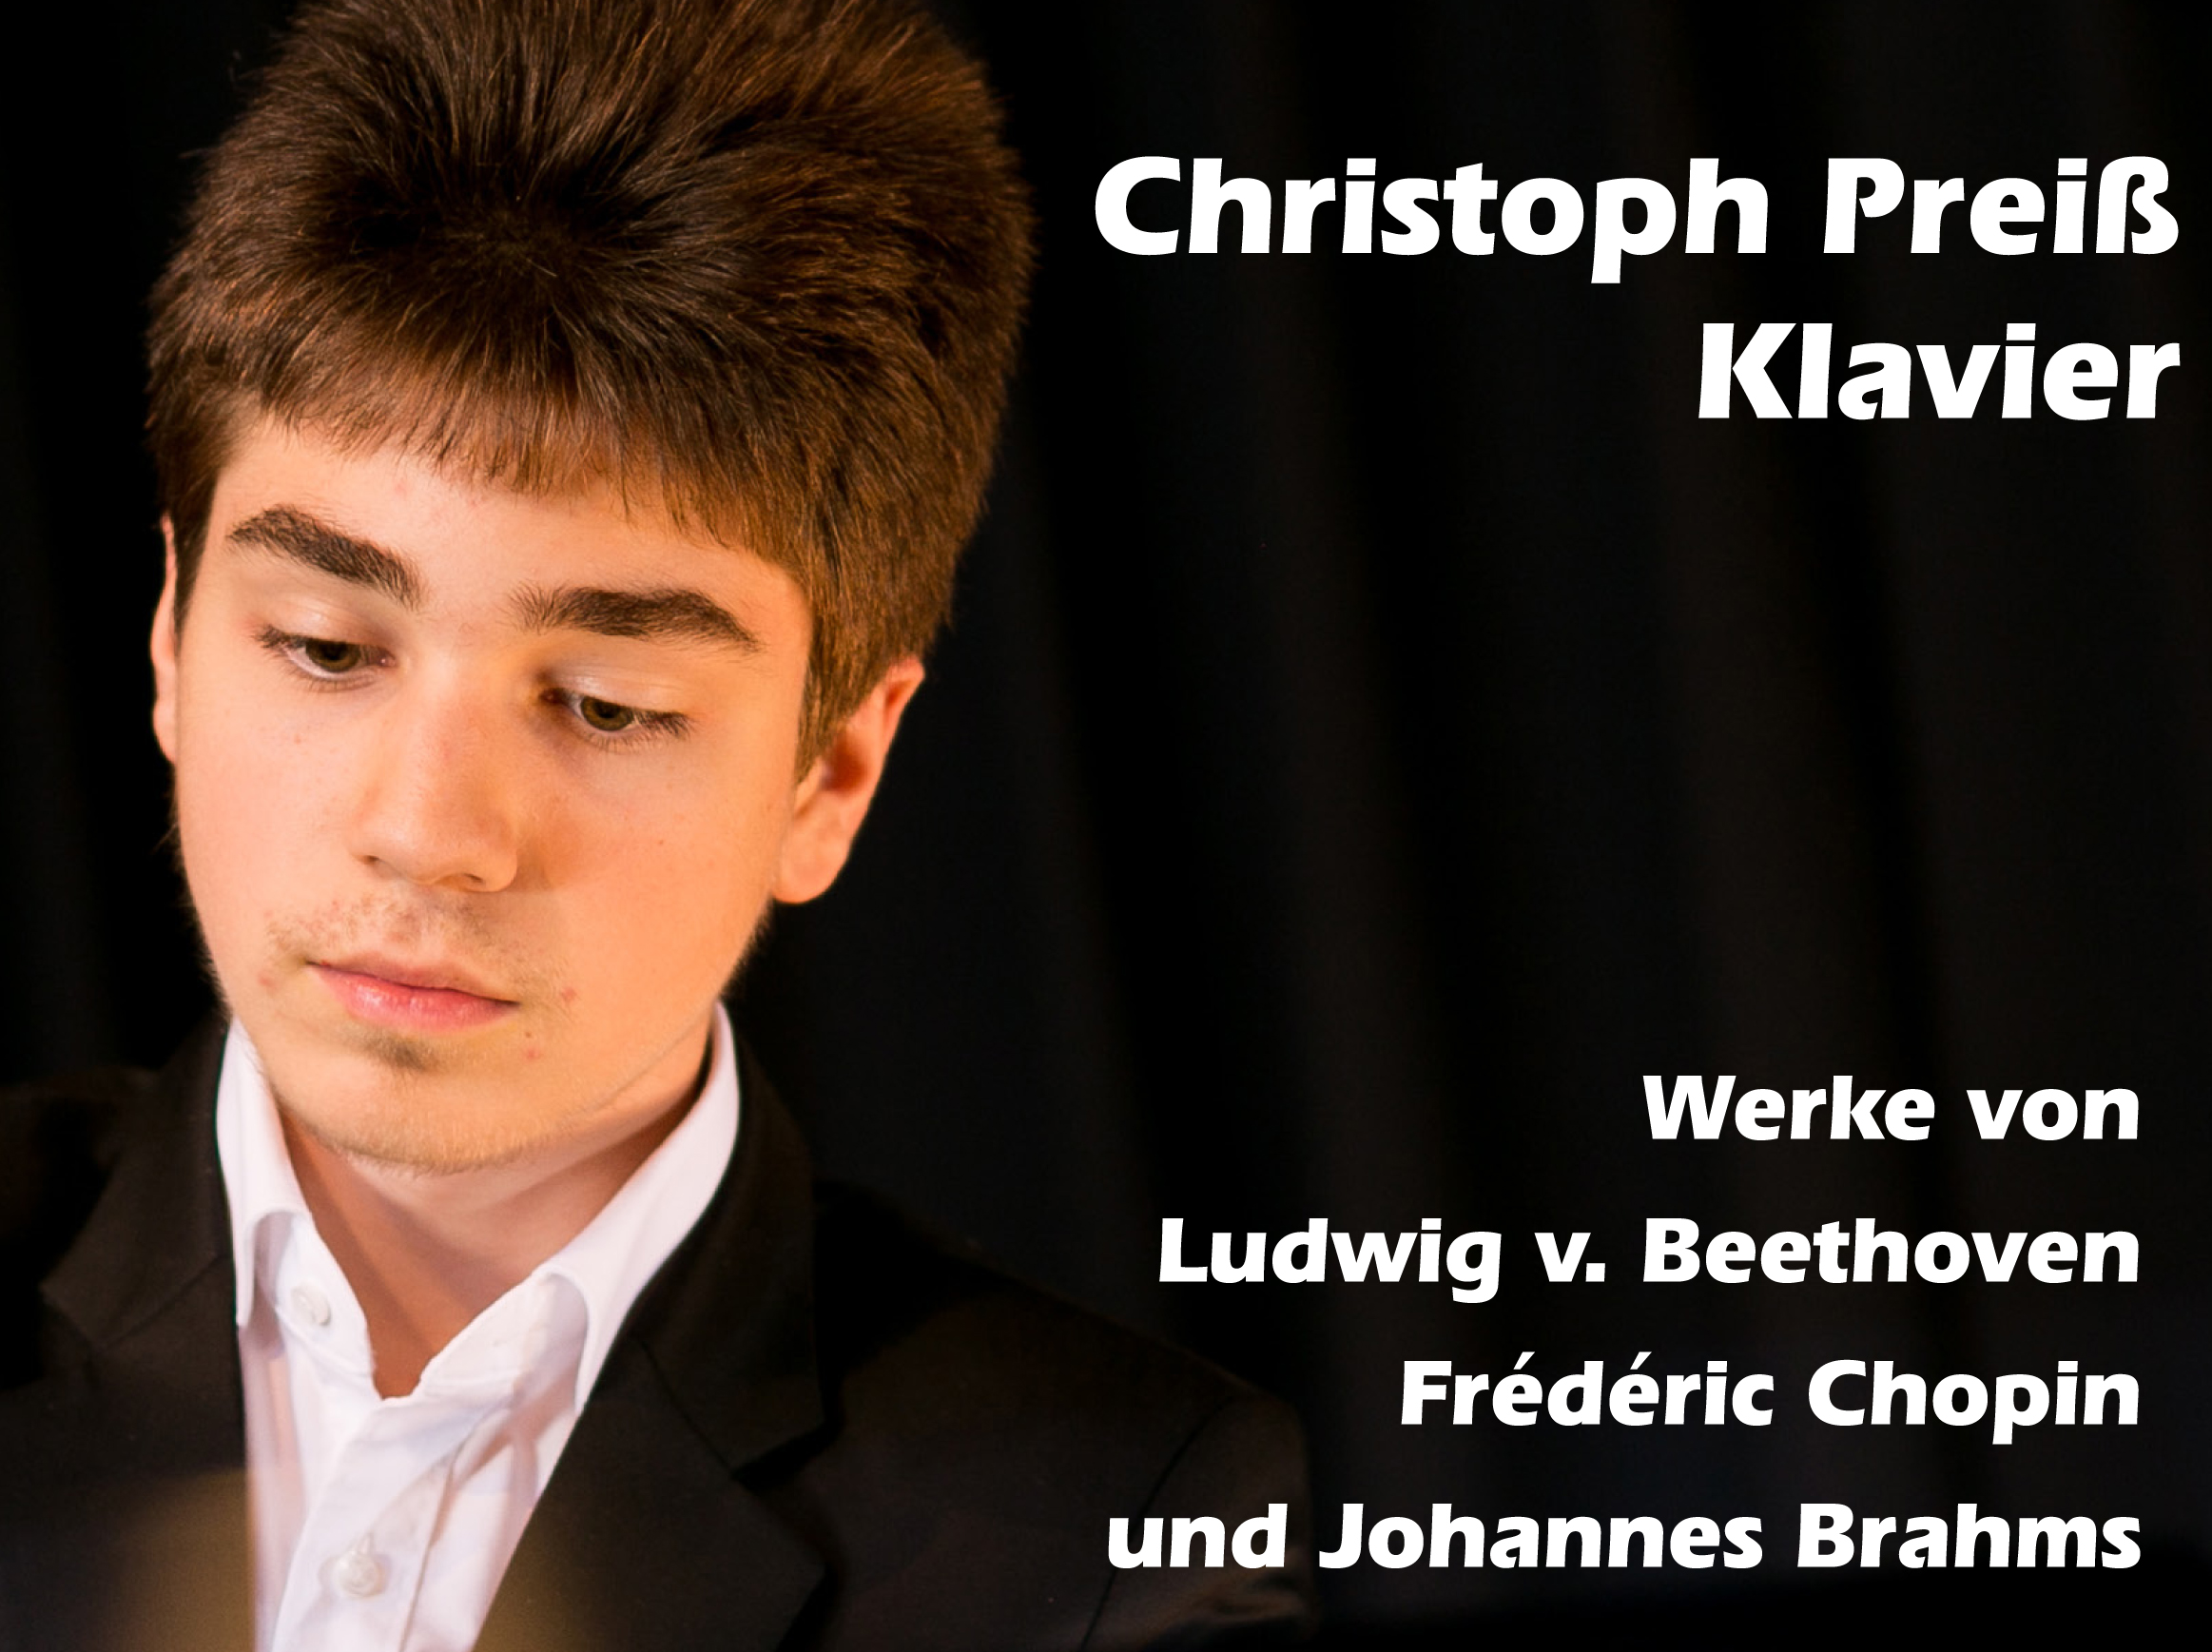 Benefizkonzert des Solopianisten Christoph Preiß am 27.09.2020